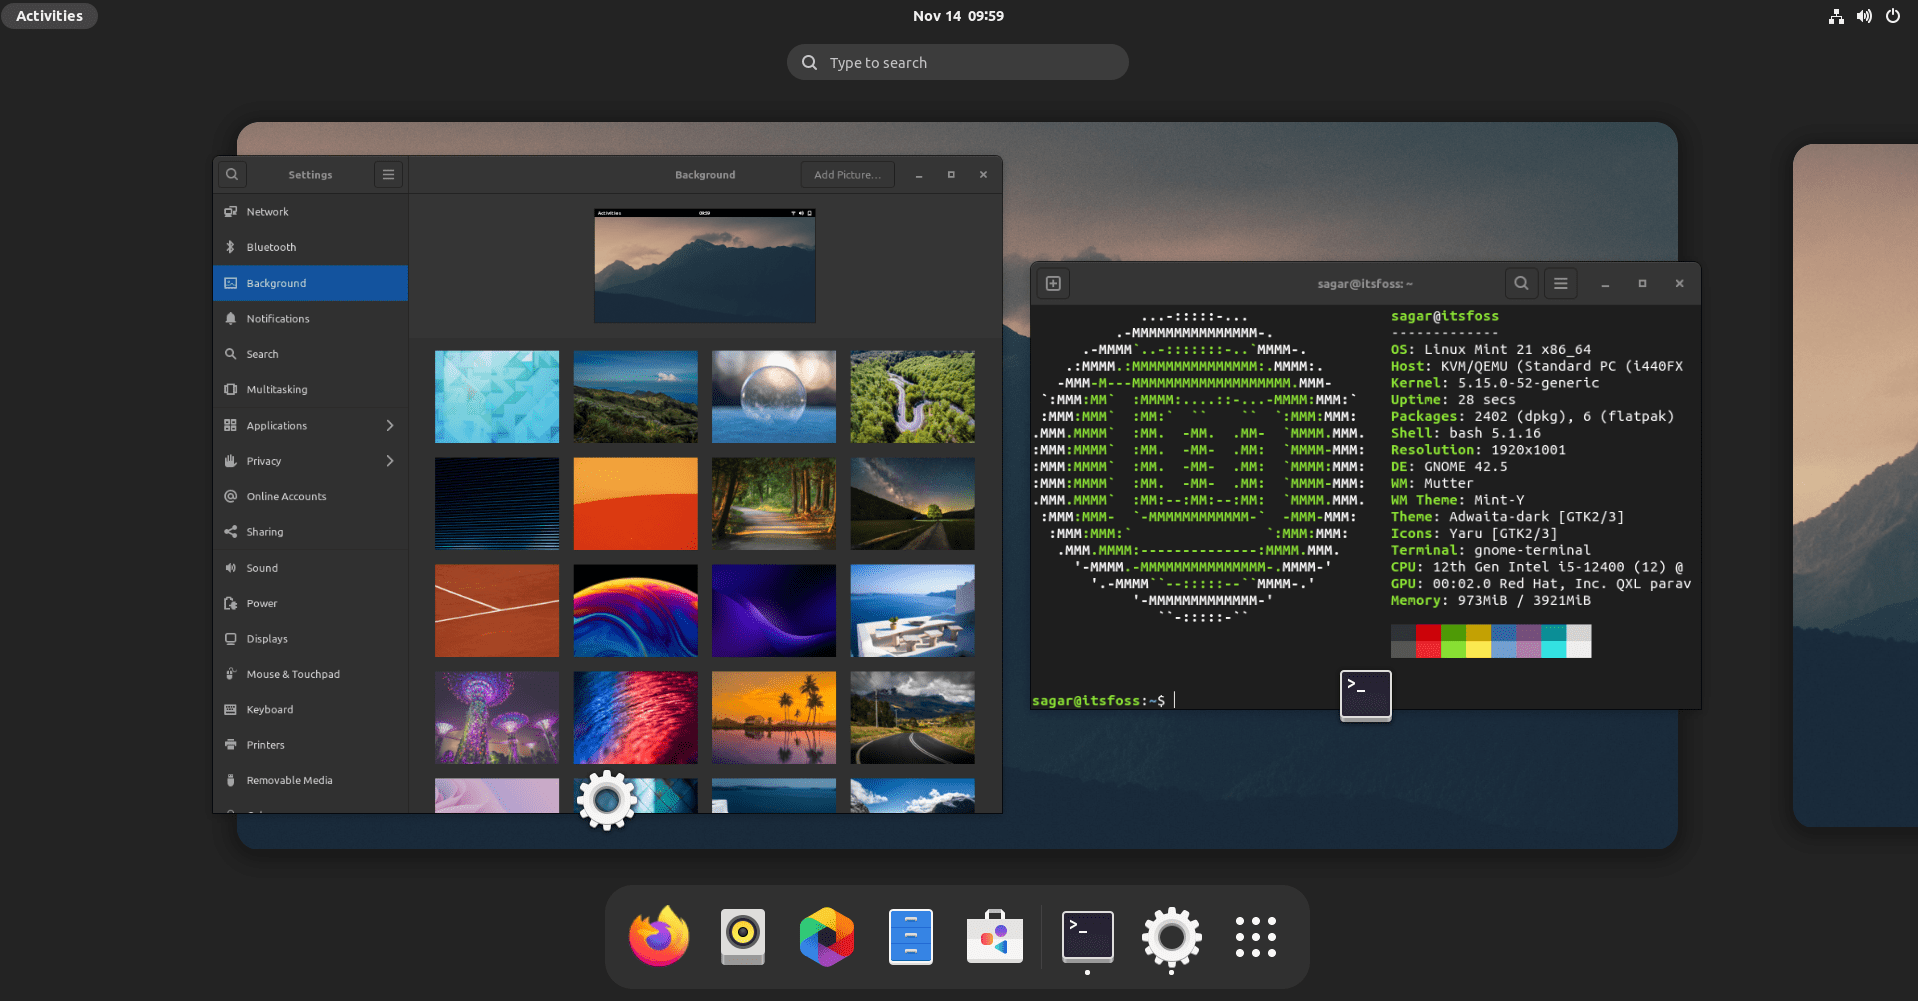 如何在 Linux Mint 上安装 GNOME 桌面环境